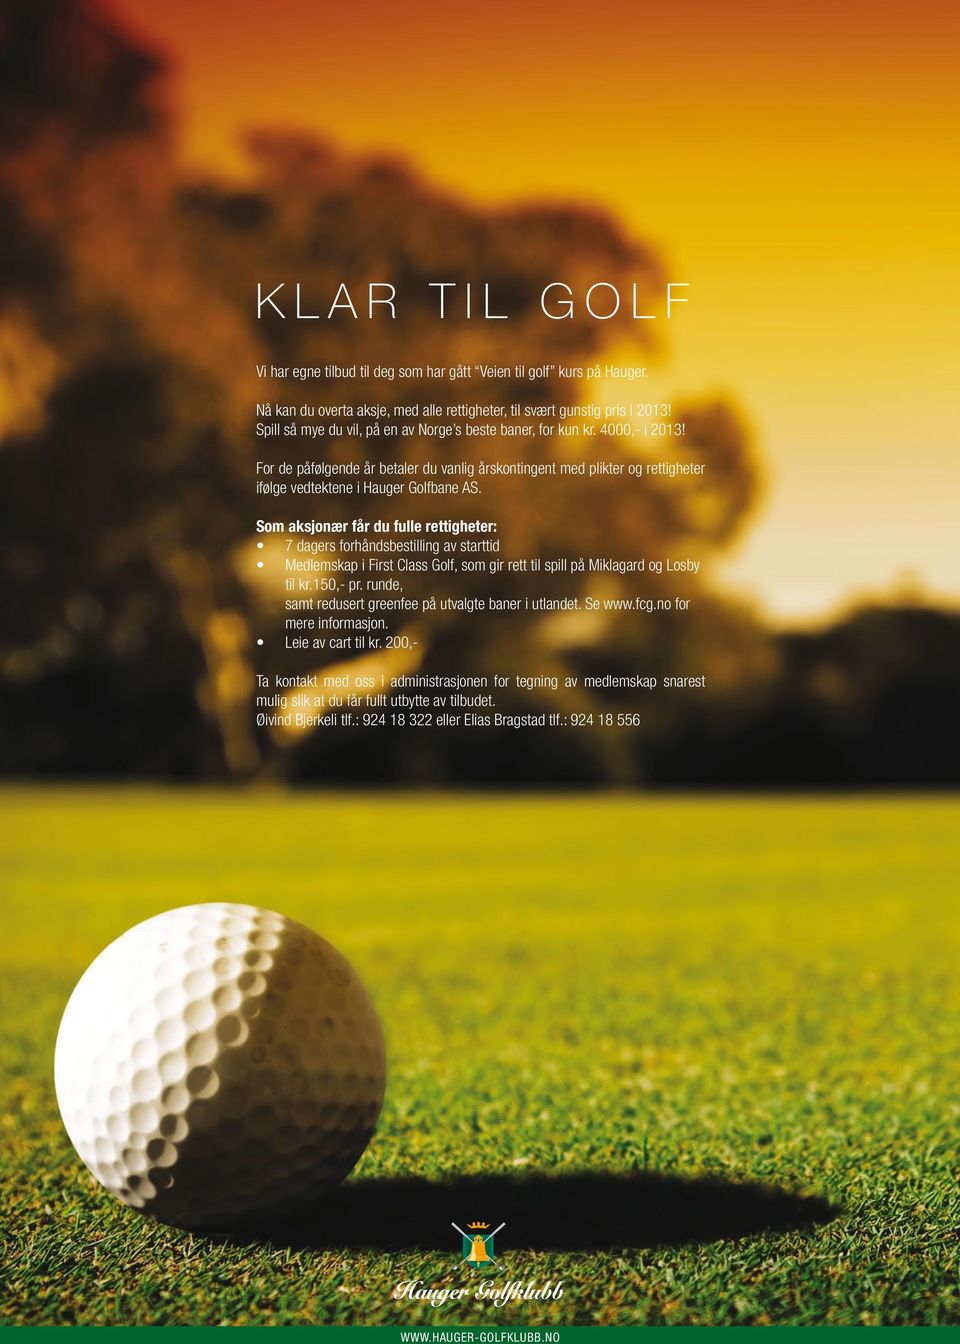 Som aksjonær får du fulle rettigheter: 7 dagers forhåndsbestilling av starttid Medlemskap i First Class Golf, som gir rett til spill på Miklagard og Losby til kr.150,- pr.